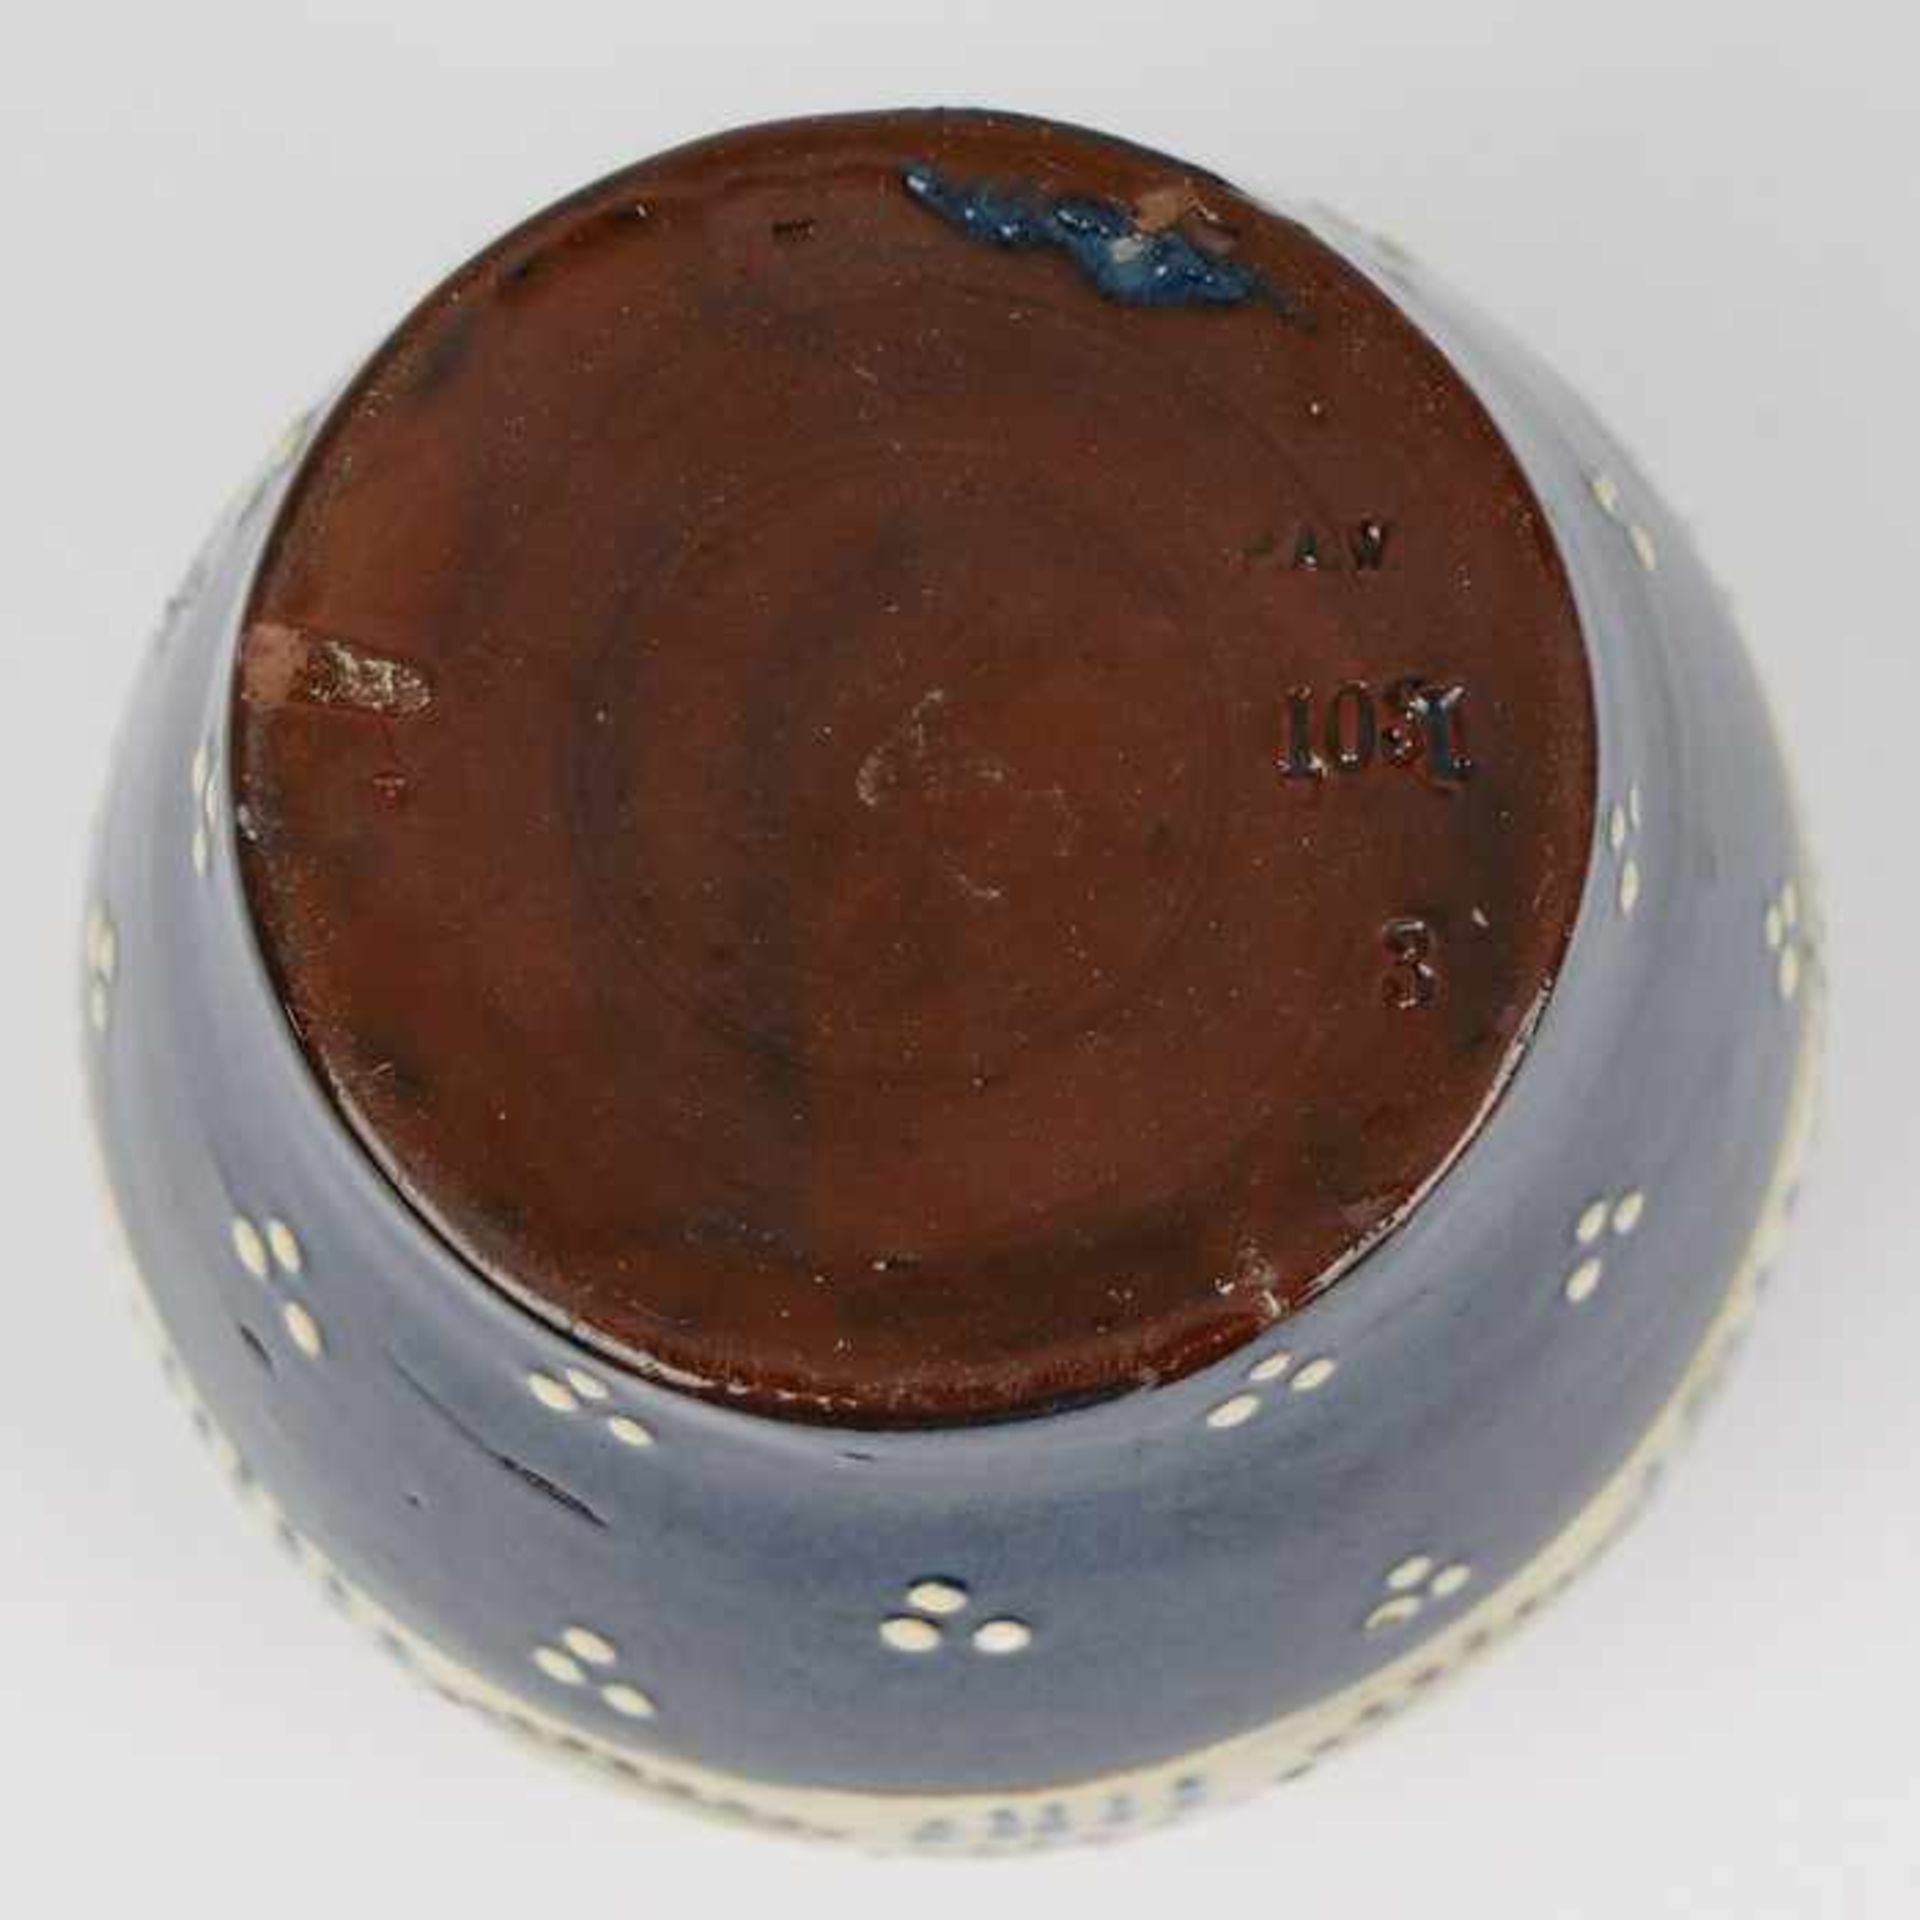 Wranitzky, P.A. - Vaseum 1900, Prägemarke, Nr. 103, bauchiger Korpus, blauer Fond mit weißen Tupfen, - Bild 4 aus 4